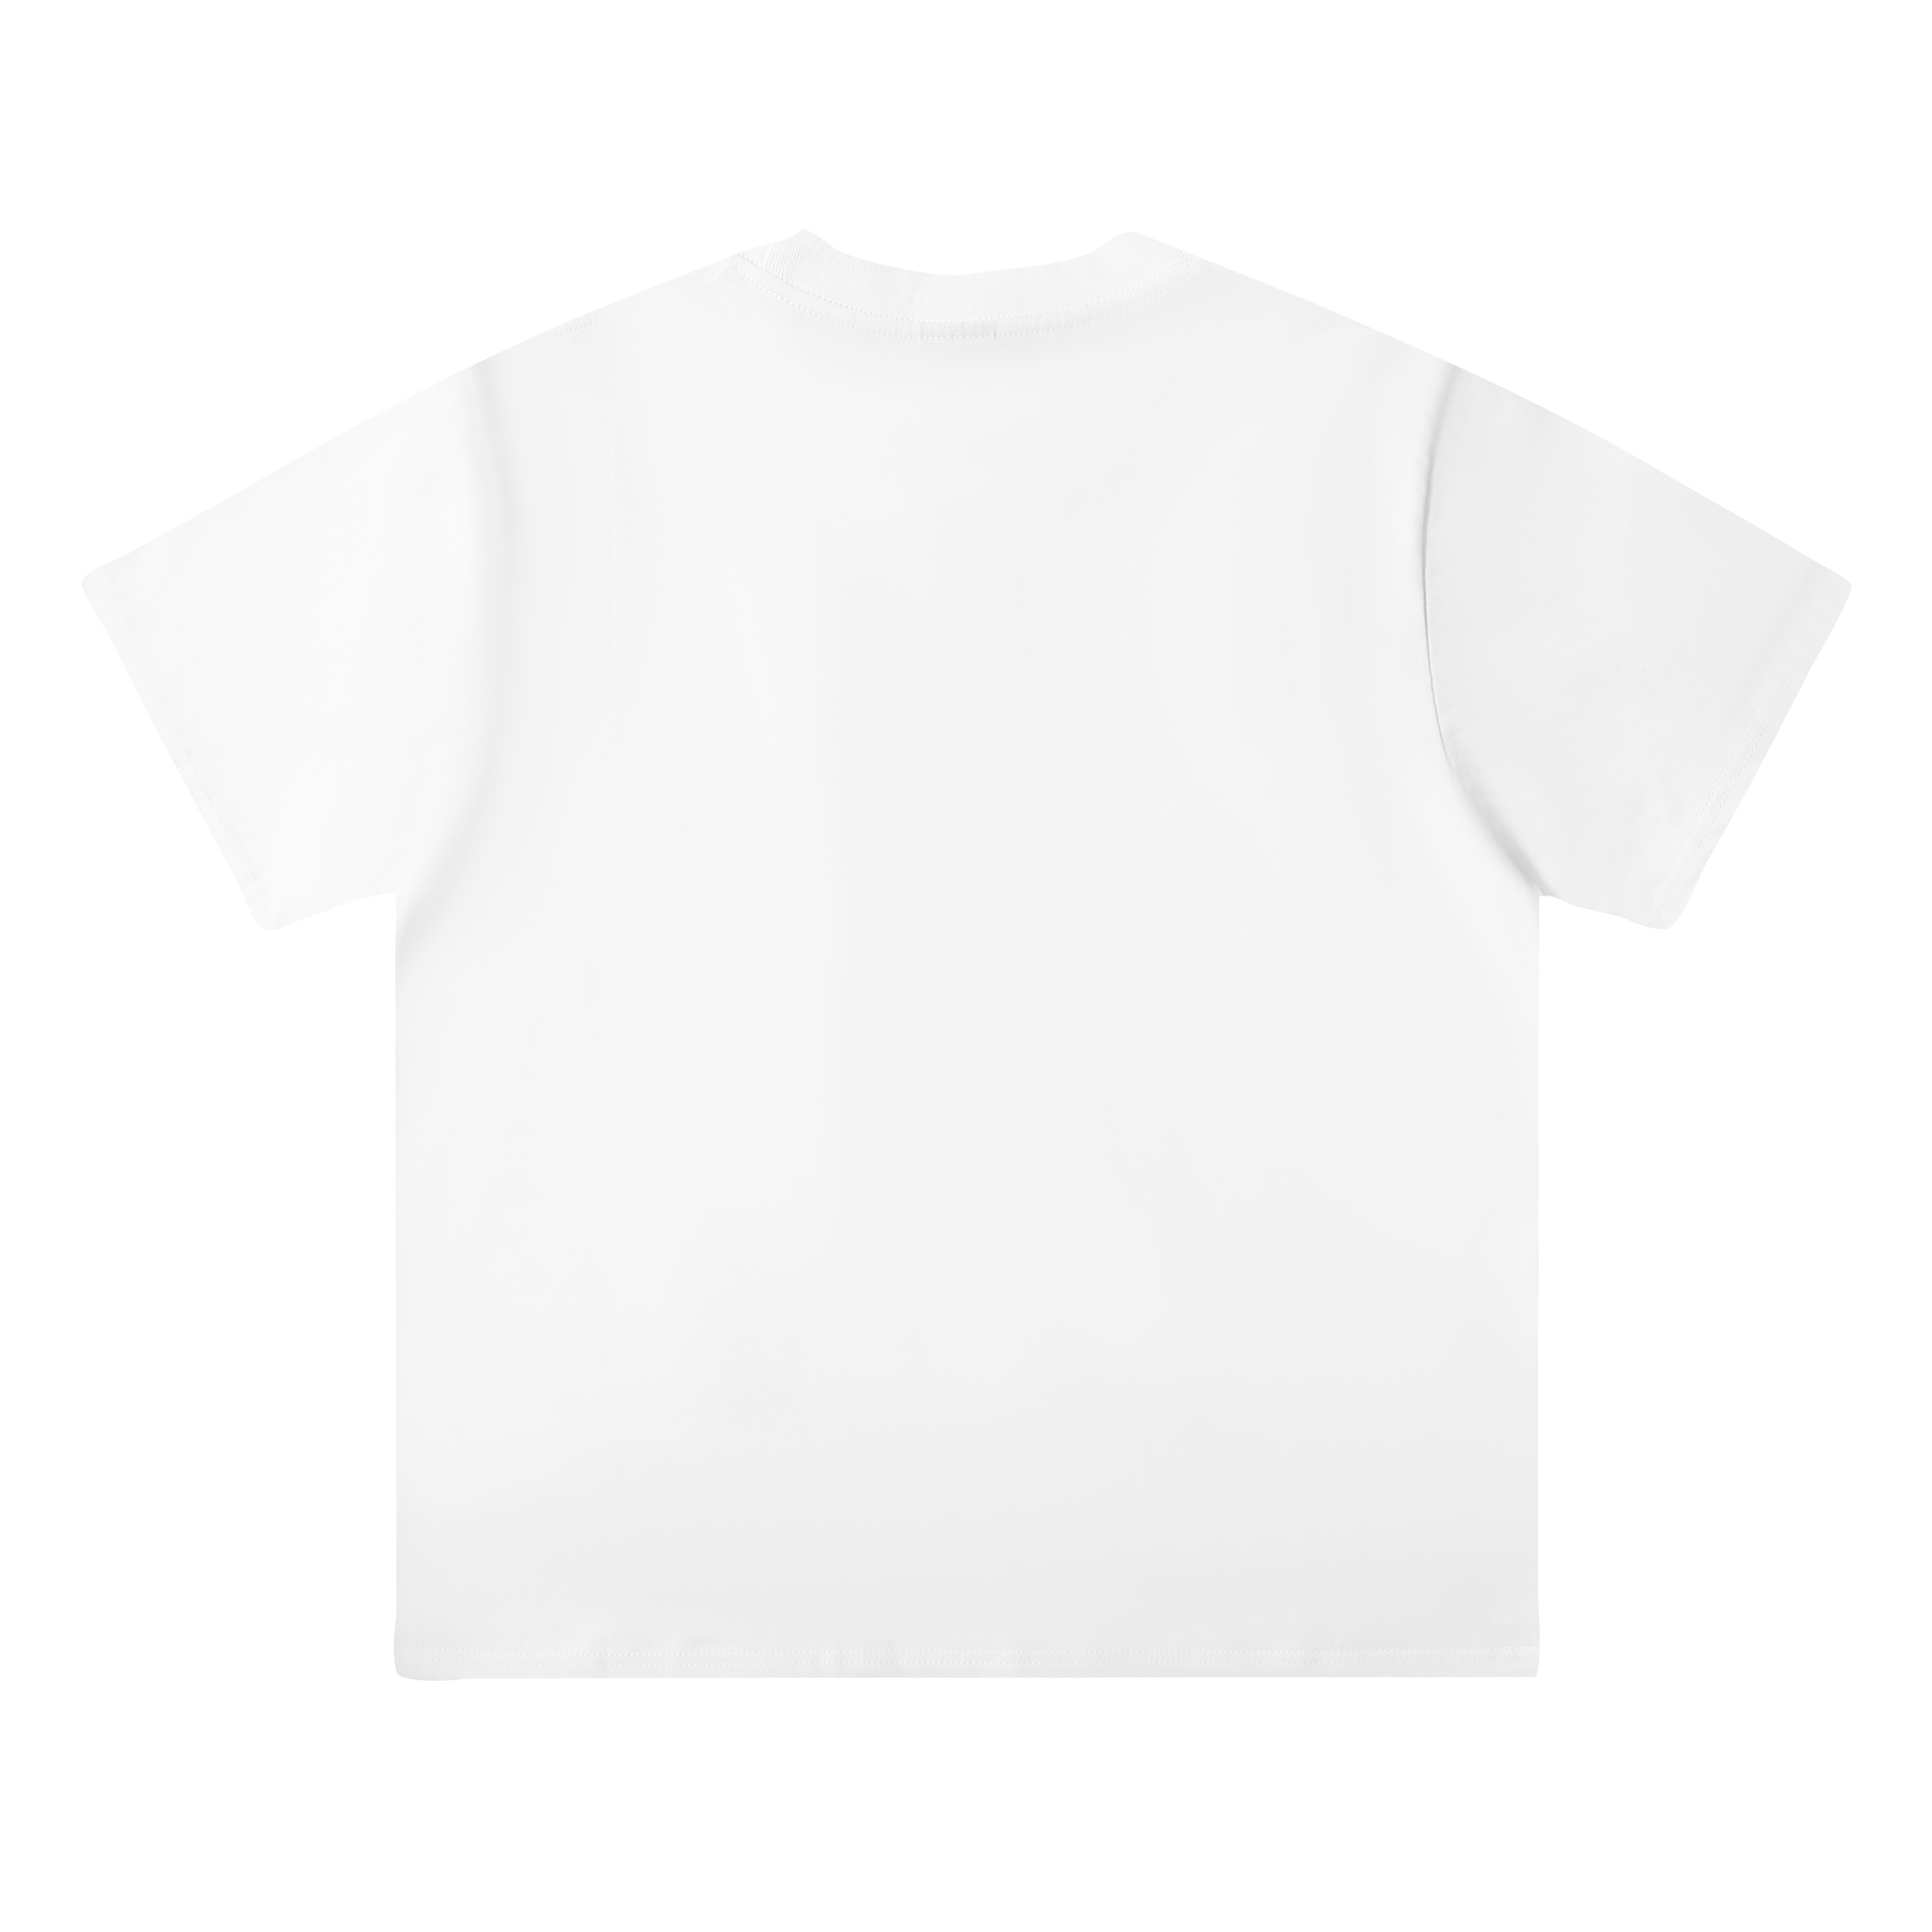 激安大特価最新作の ステューシー tシャツ タグスーパーコピー トップス 純綿 半袖 プリント ファッション 3色可選_5